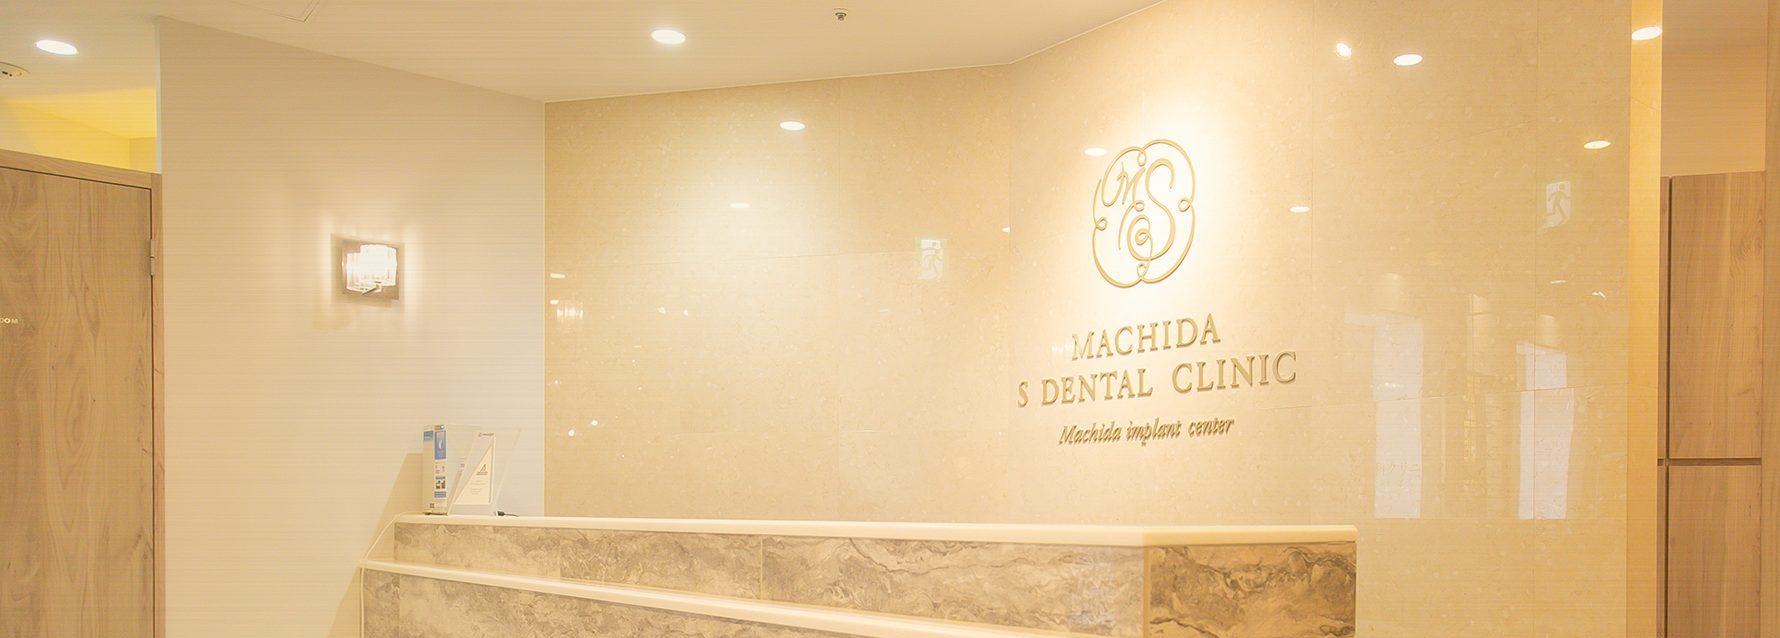 町田エス歯科クリニックオープンしました イメージ